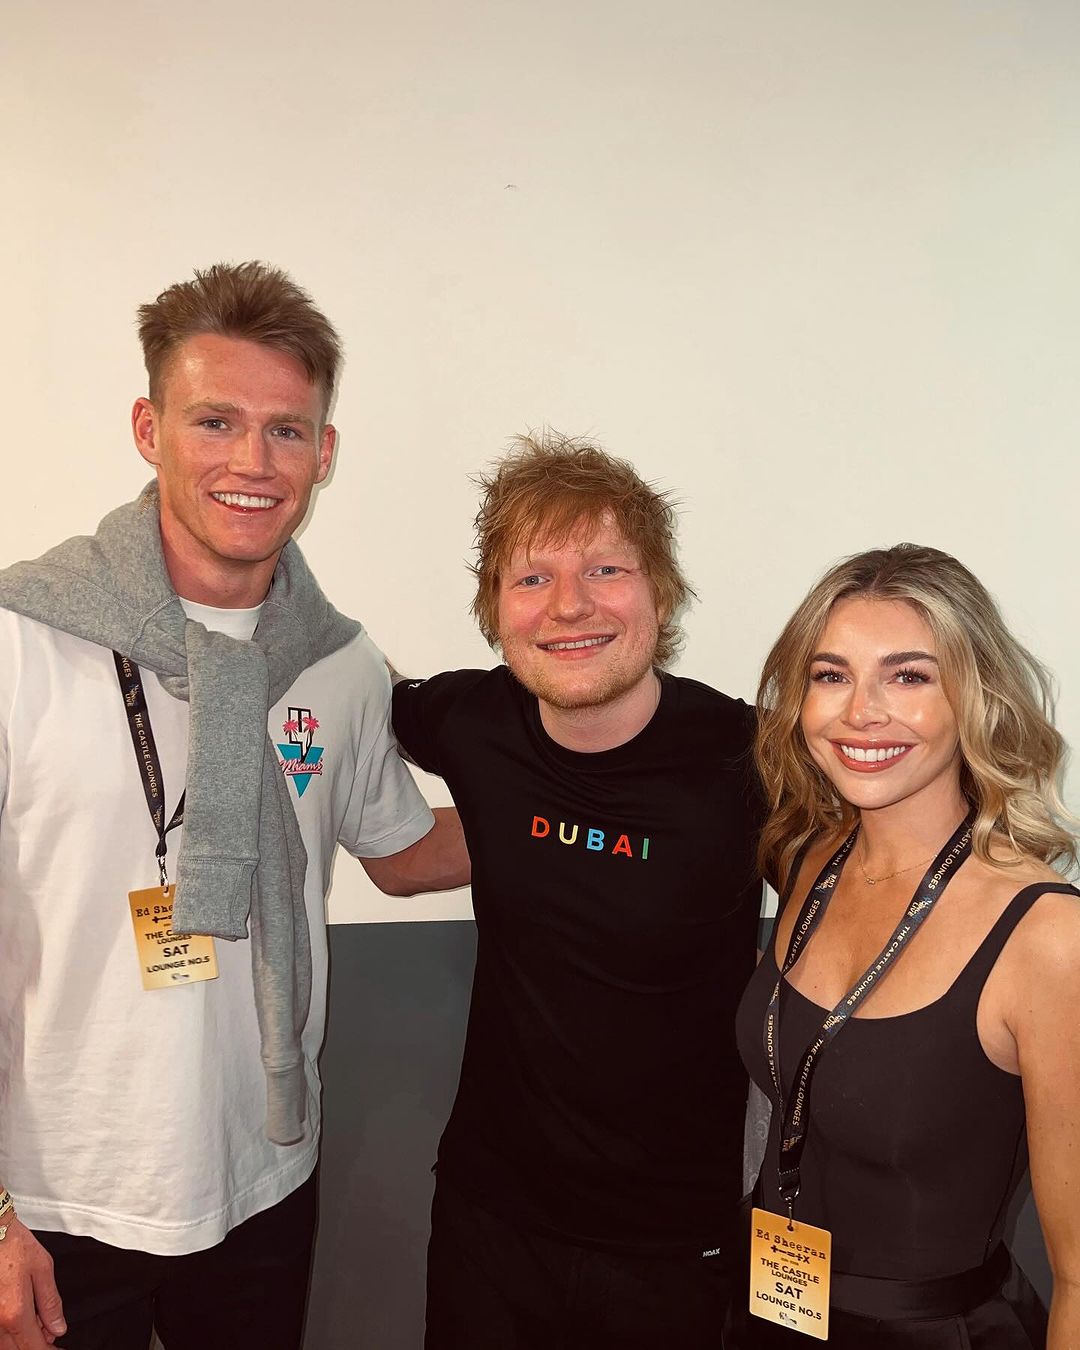 Conocieron a Ed Sheeran después de uno de los shows del músico.